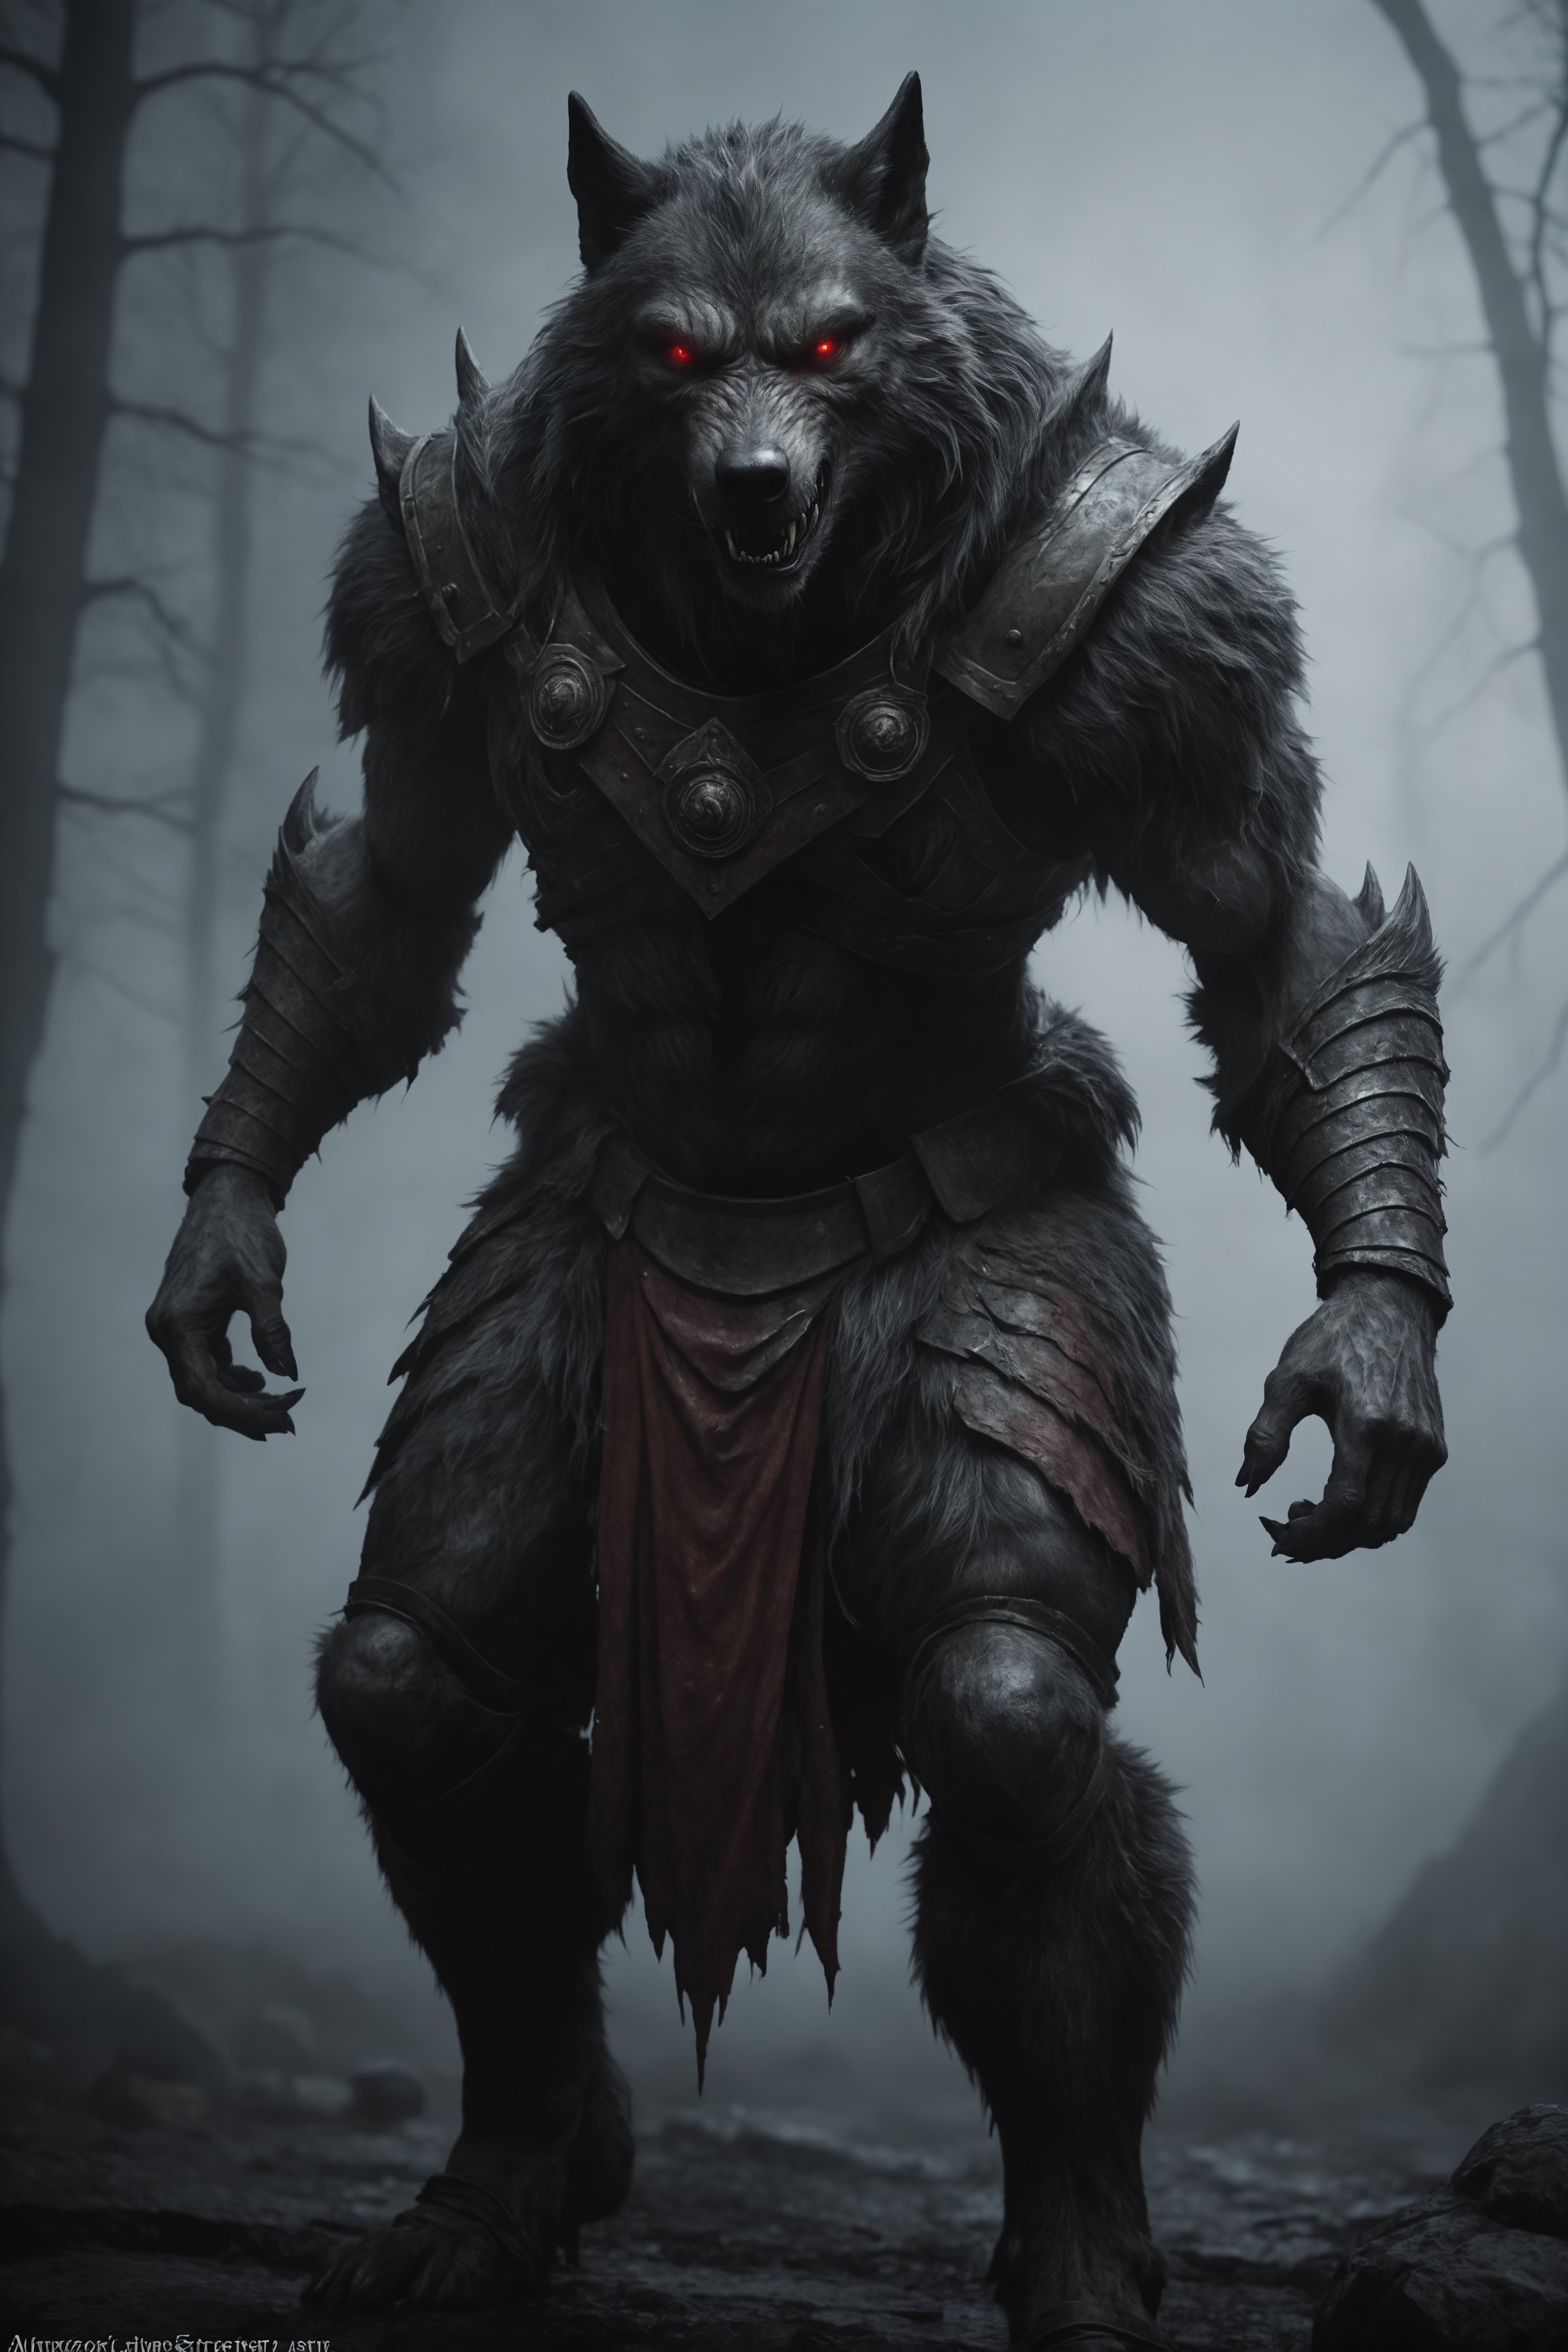 cinematic, werewolf, inricate armor, wrathful eyes, epic, absurdres, dark atmosphere, fog 